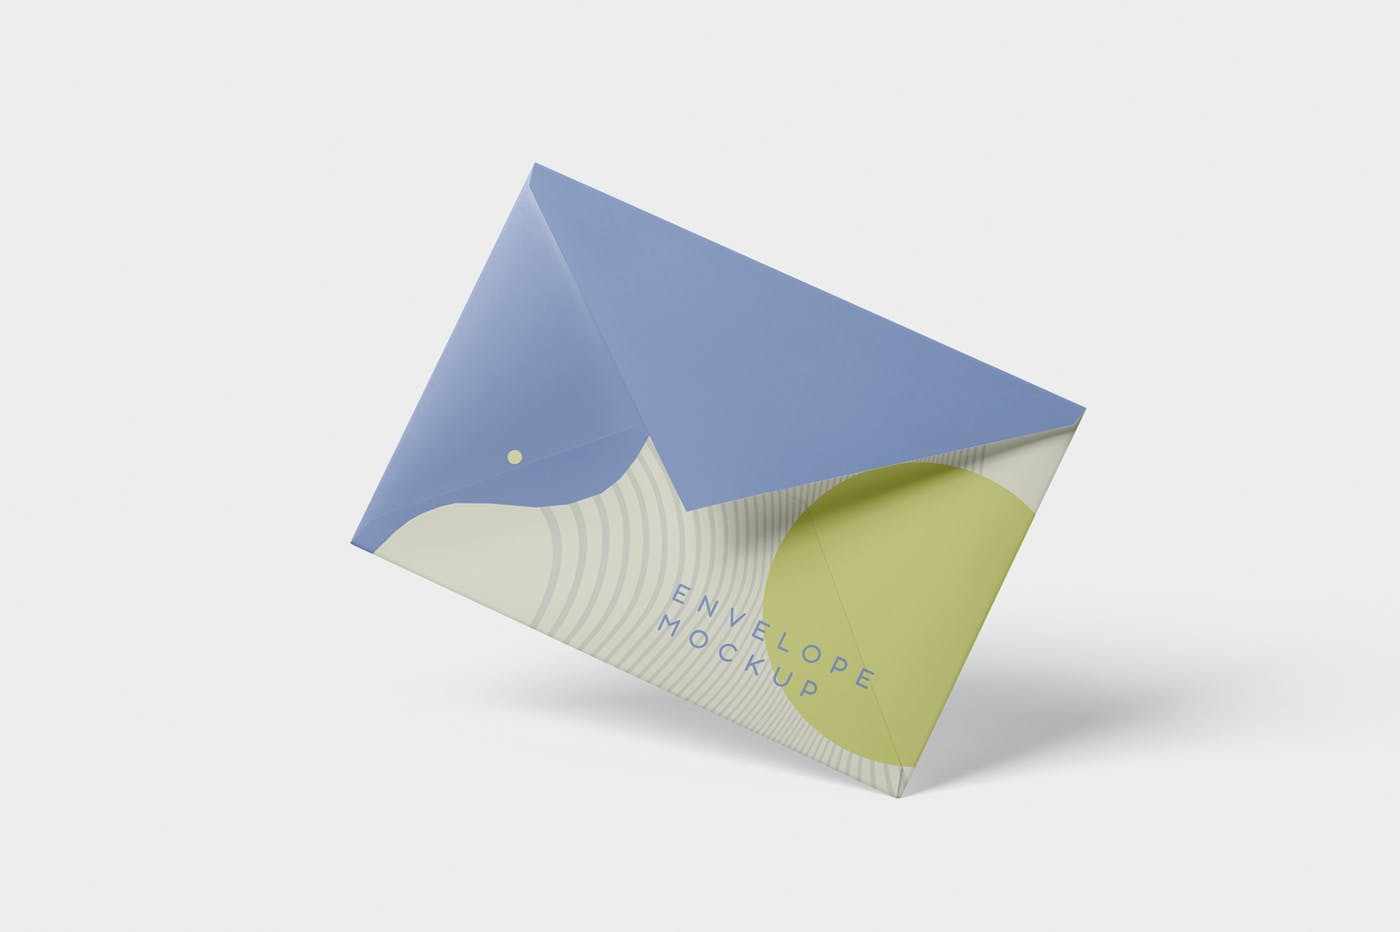 高端企业信封外观设计图蚂蚁素材精选模板 Envelope C5 – C6 Mock-Up Set插图(2)